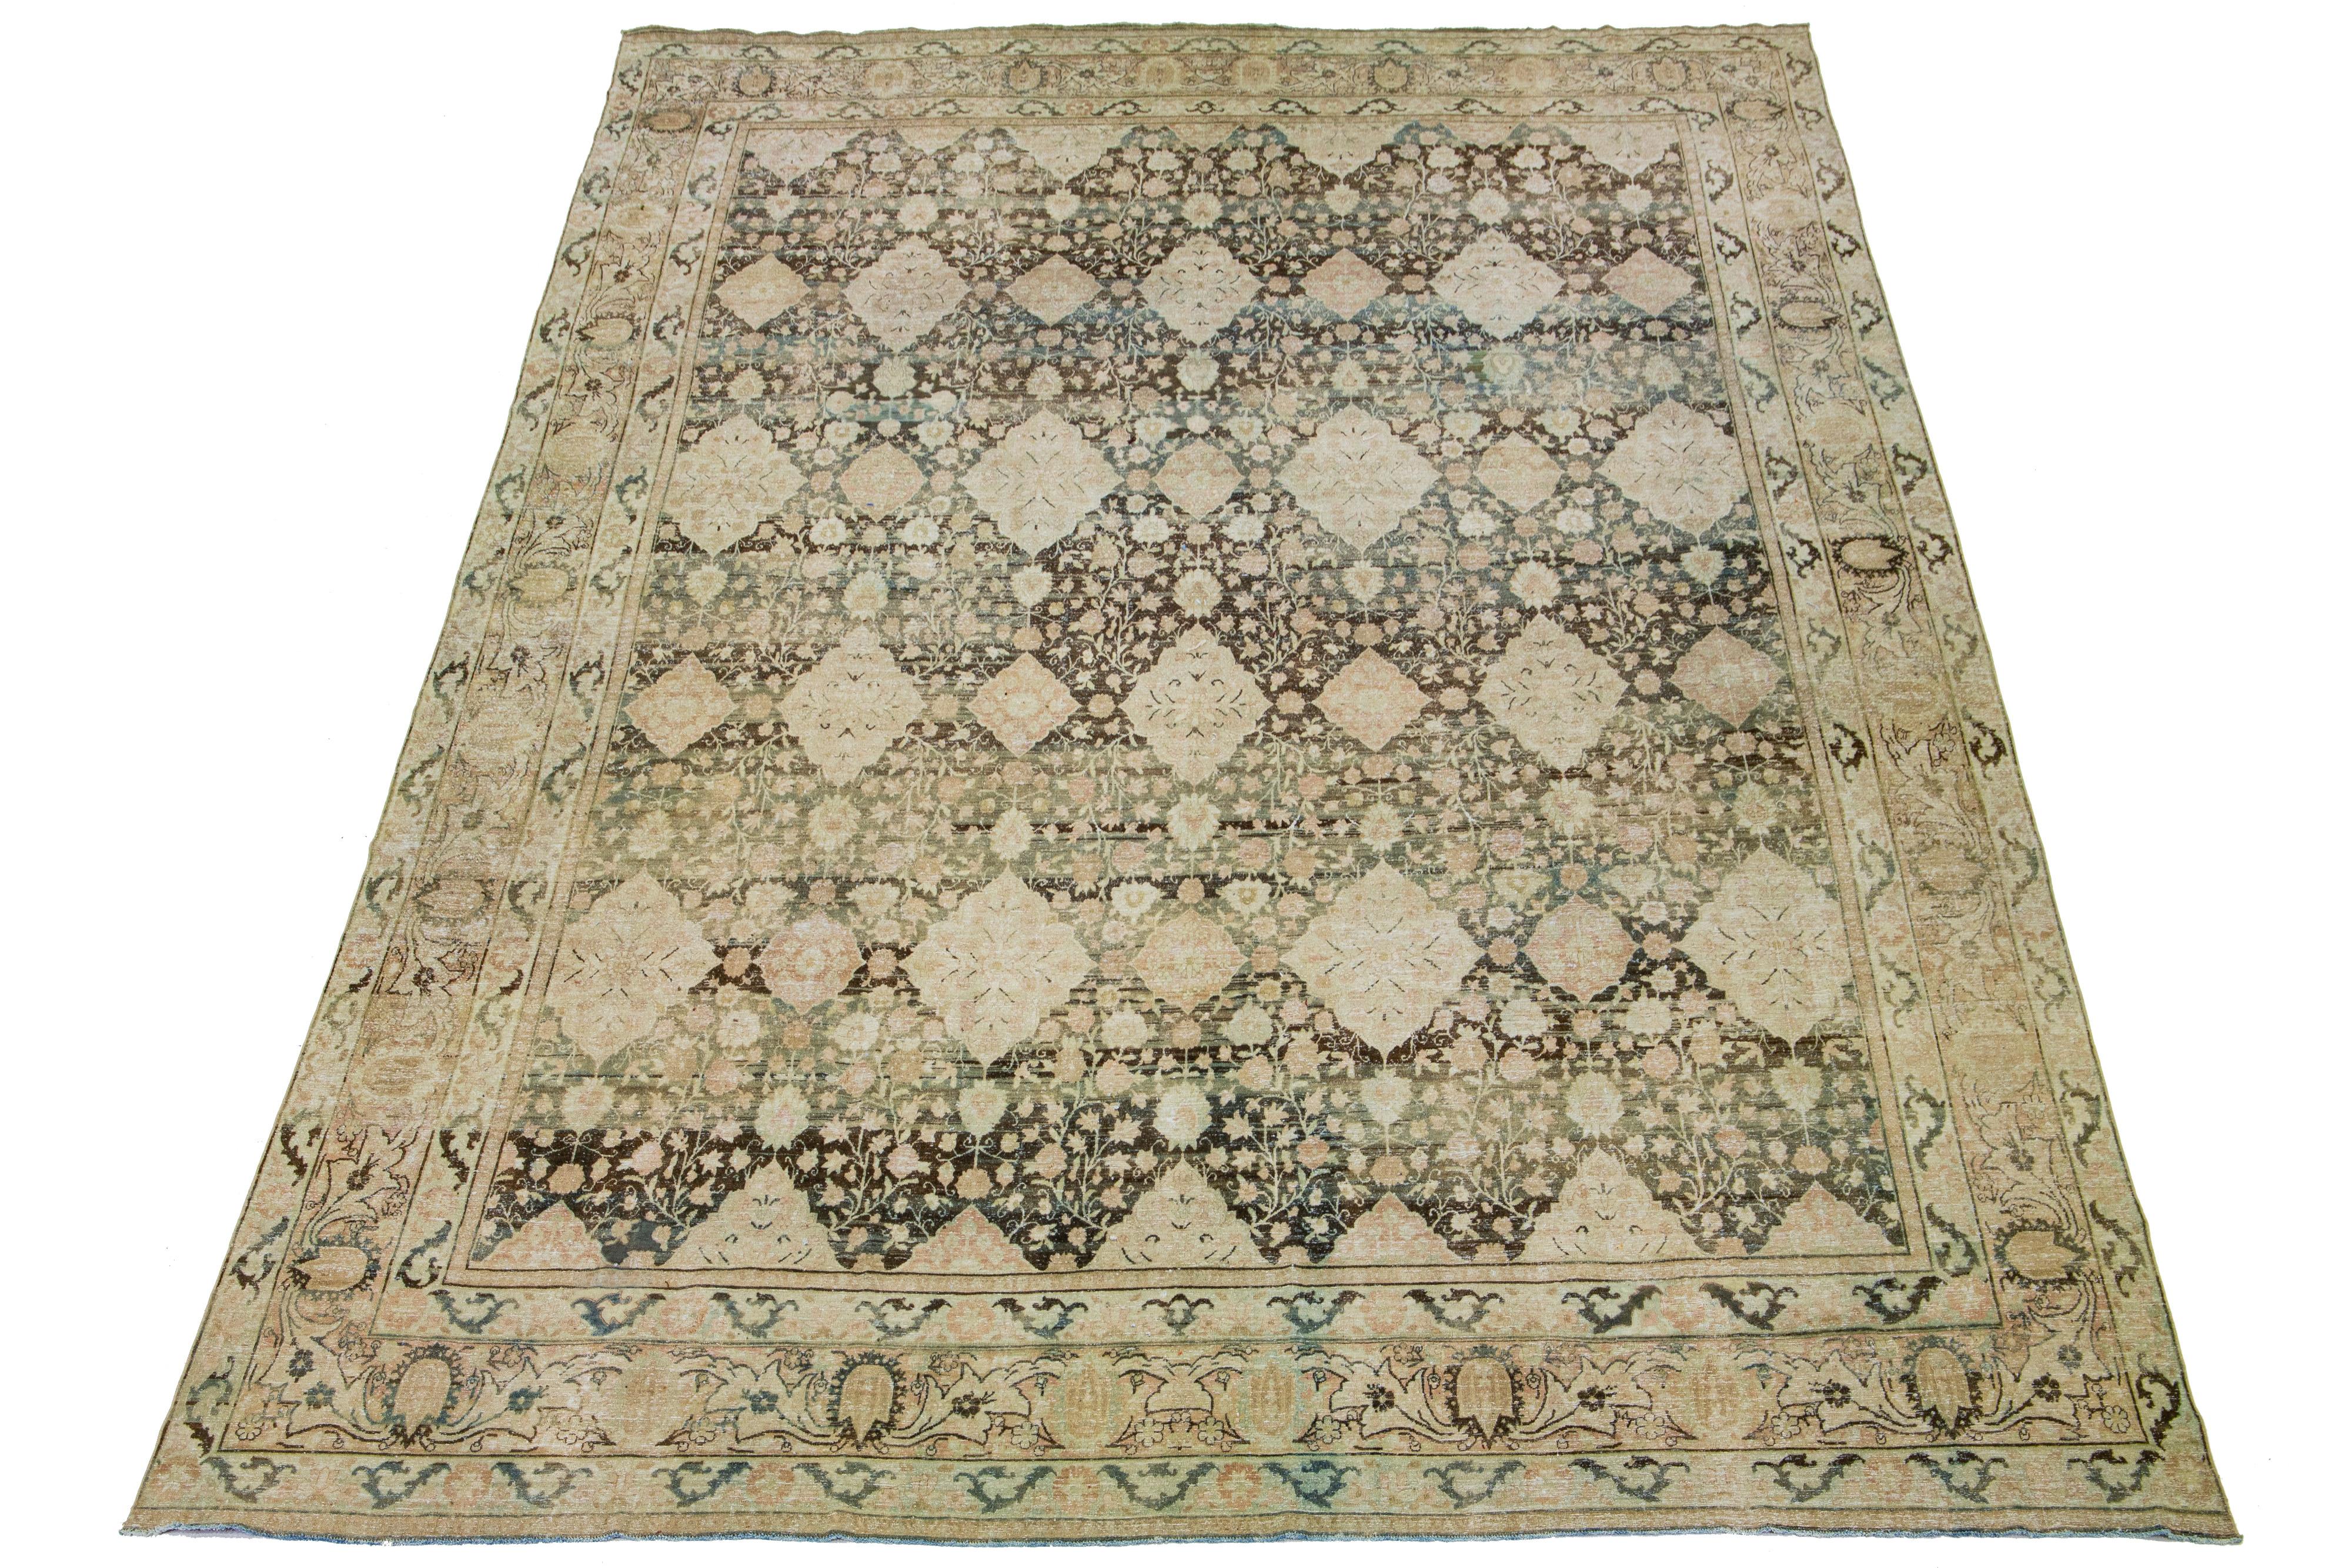 Ce magnifique tapis en laine de Kerman est noué à la main et présente une charmante finition antique. Le tapis a une couleur brune chaude et un superbe motif de rosette sur tout le pourtour. Des touches de bleu et de rouille ajoutent de la beauté à